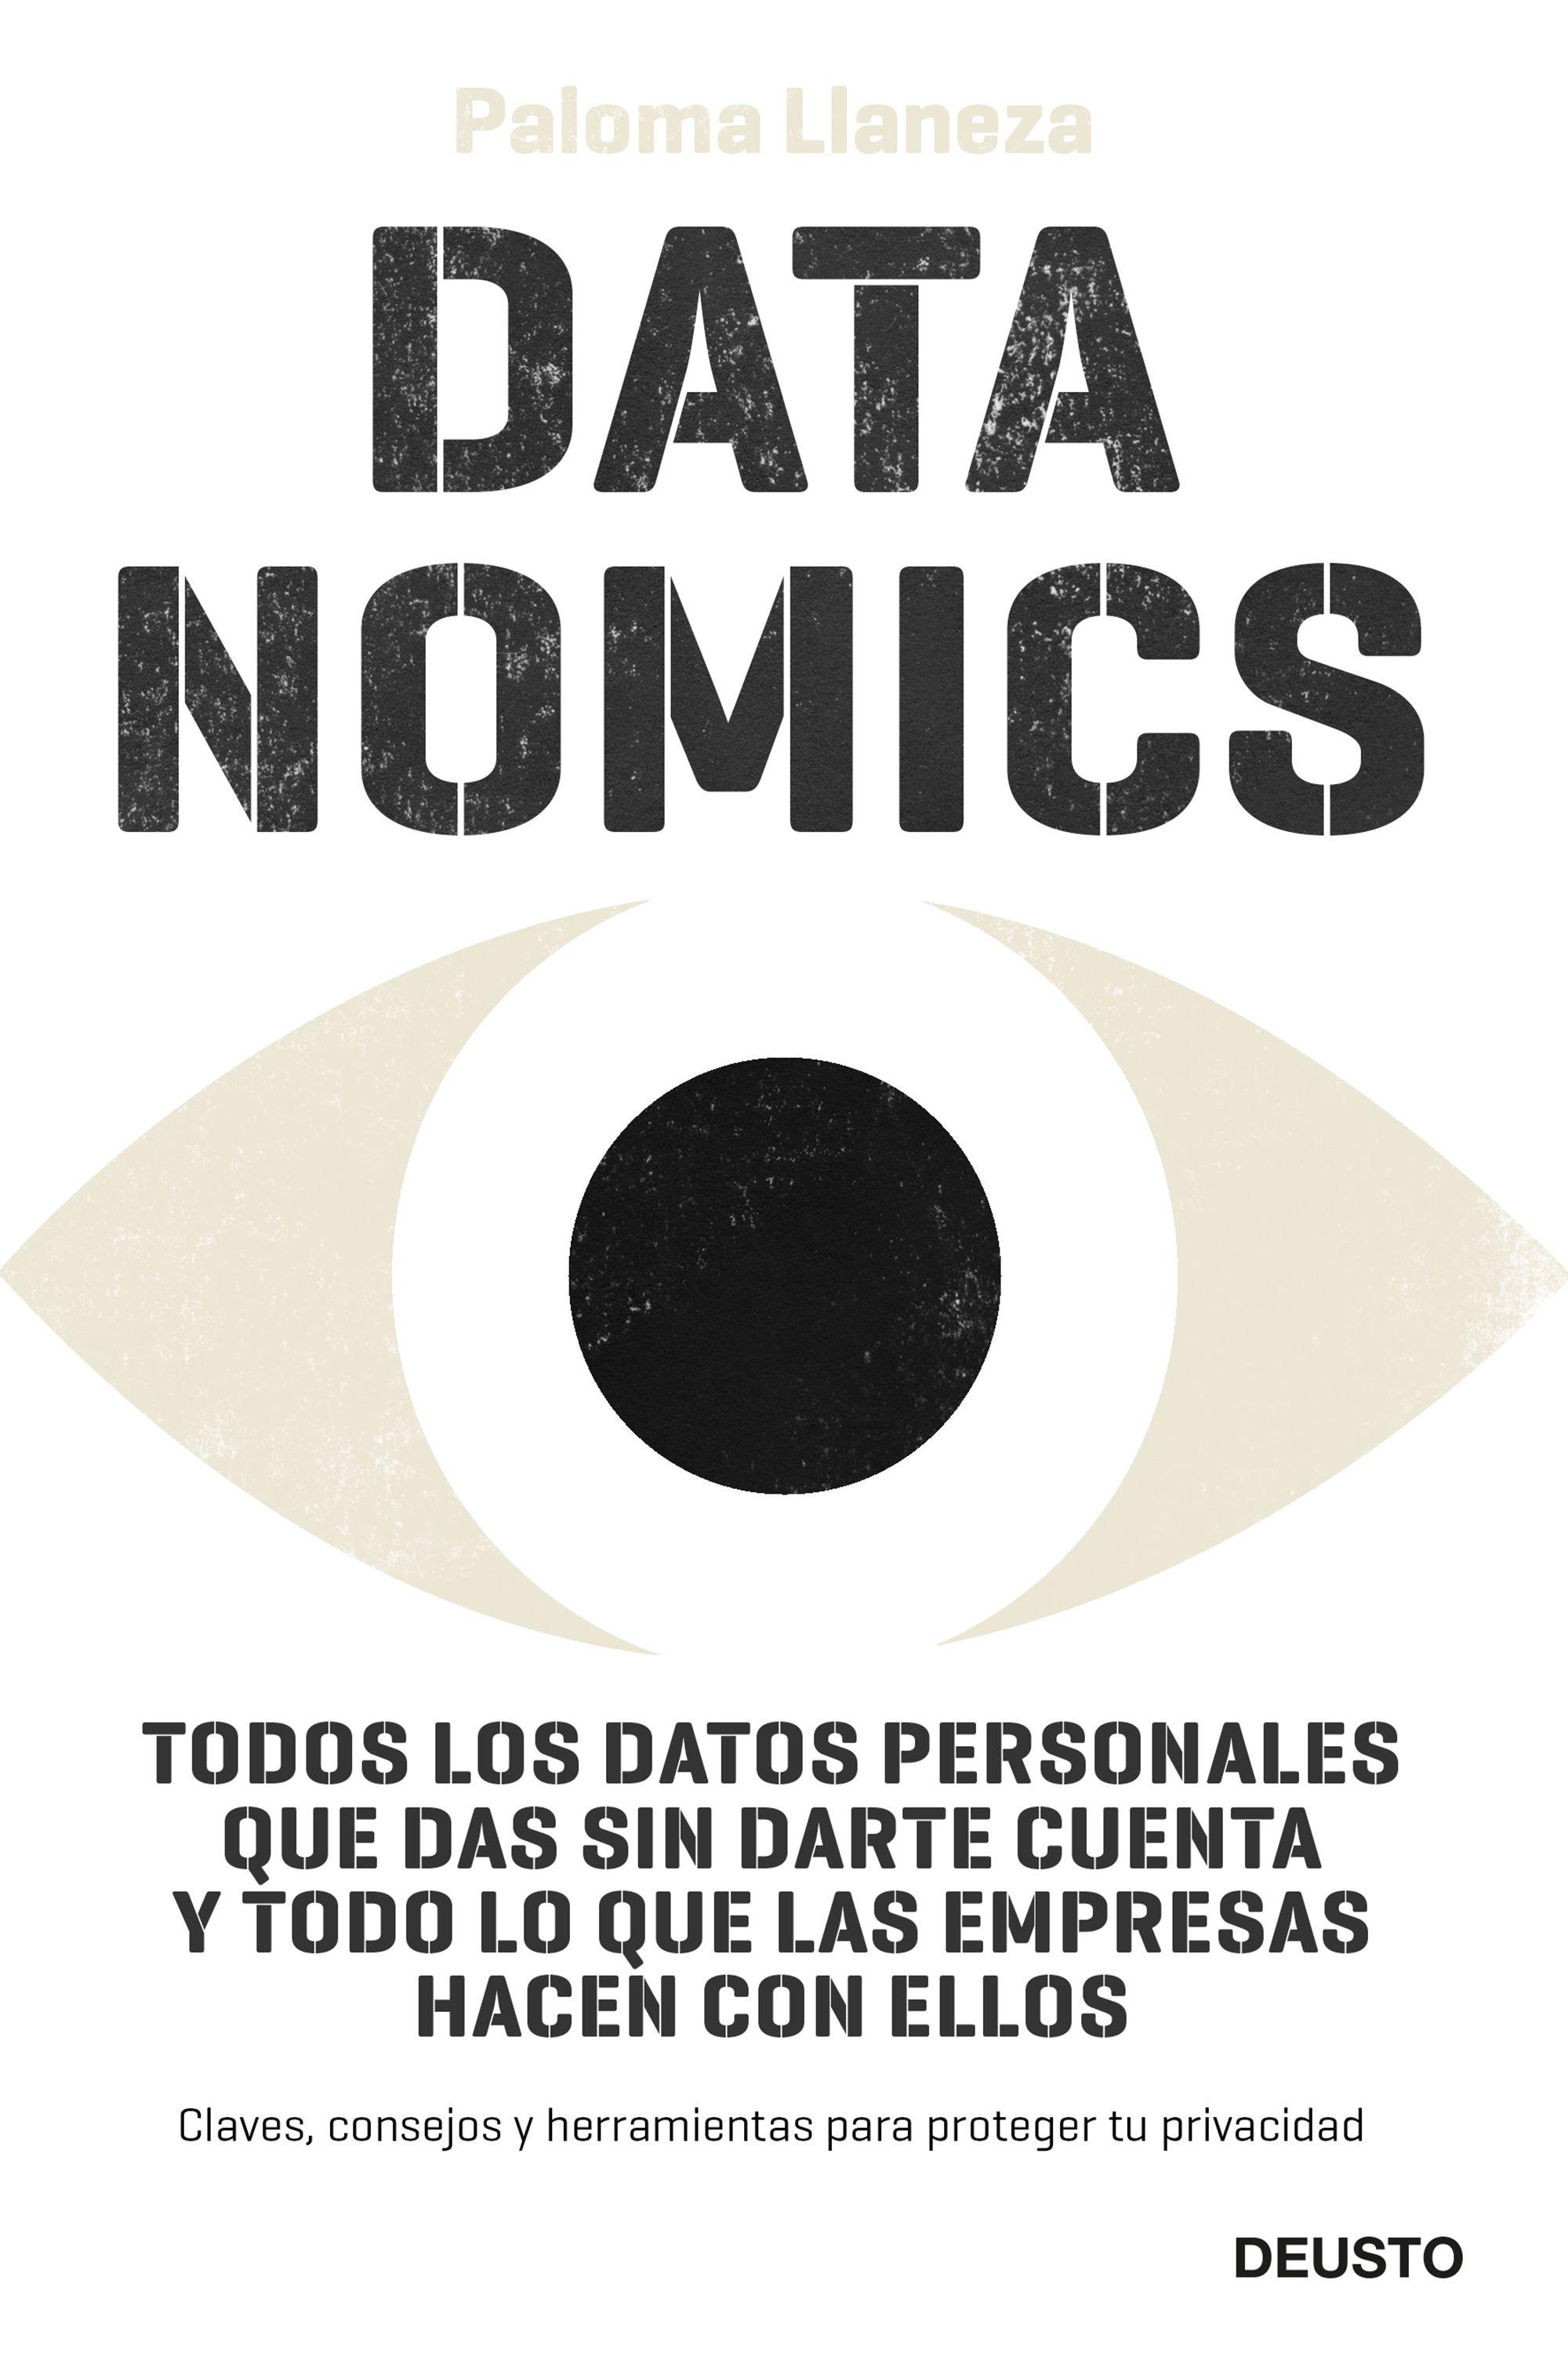 Datanomics "Todos los datos personales que das sin darte cuenta y todo lo que las em"